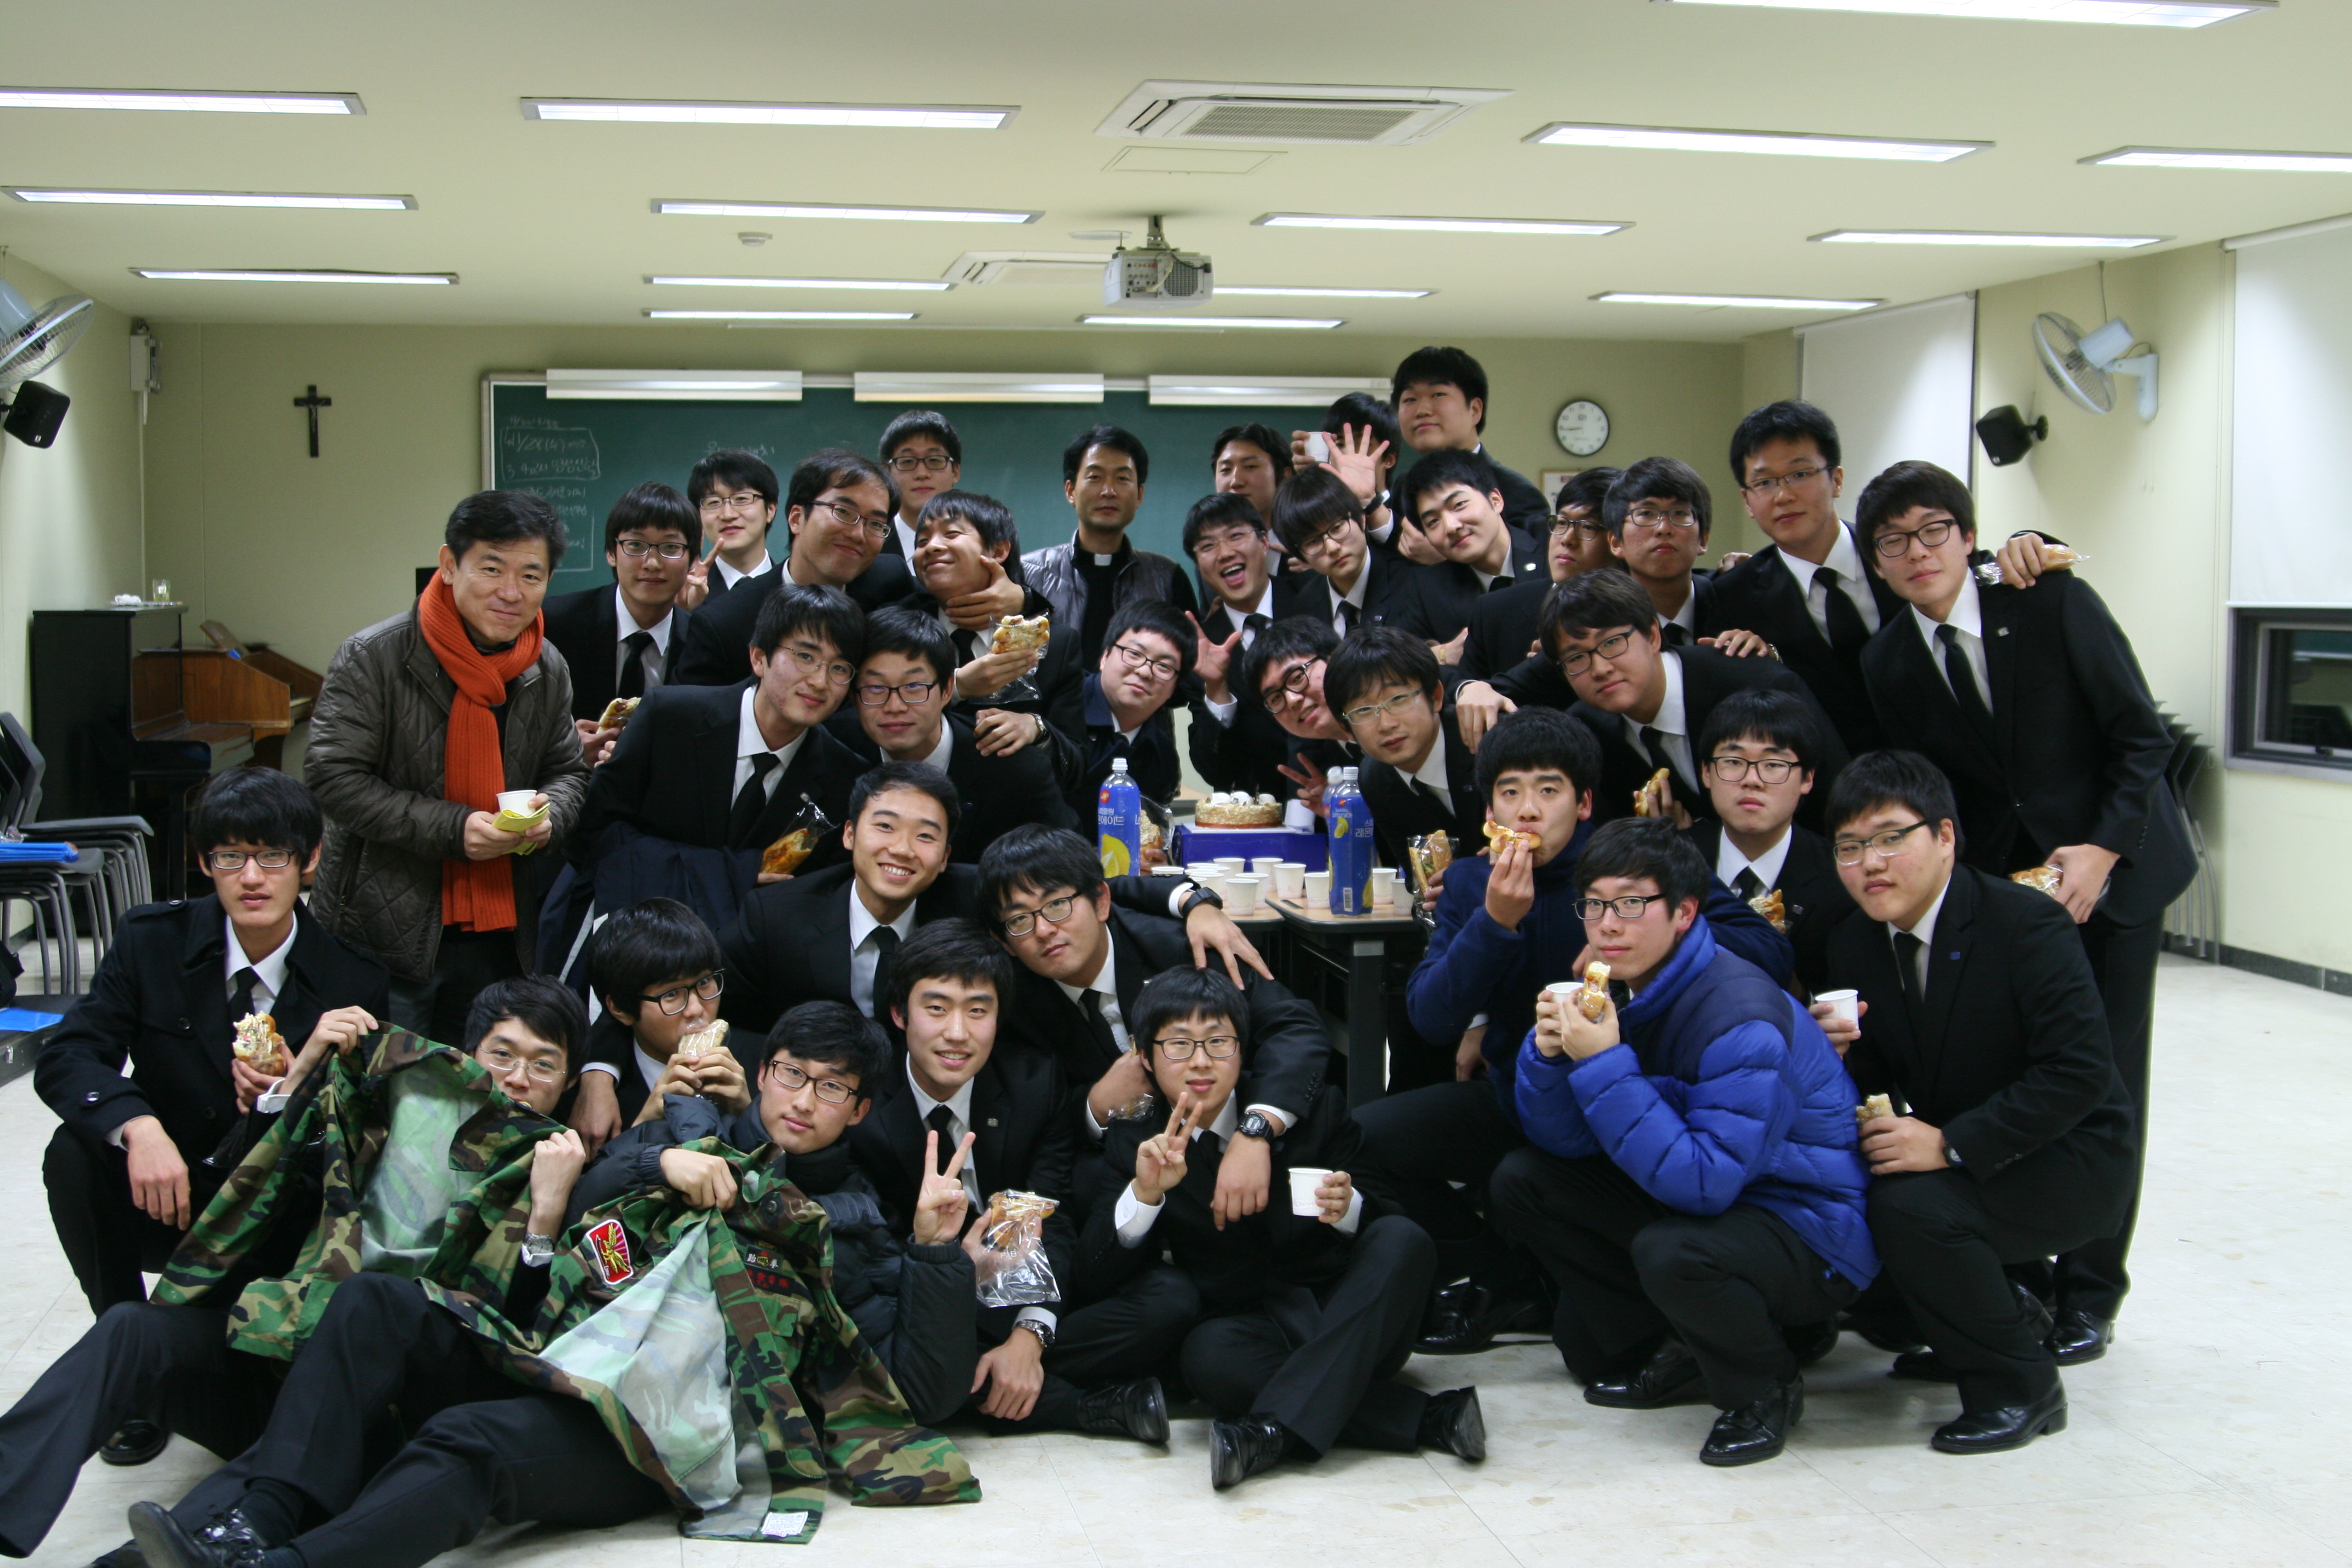 송별음악회(2012.11.23)의 관련된 이미지 입니다.